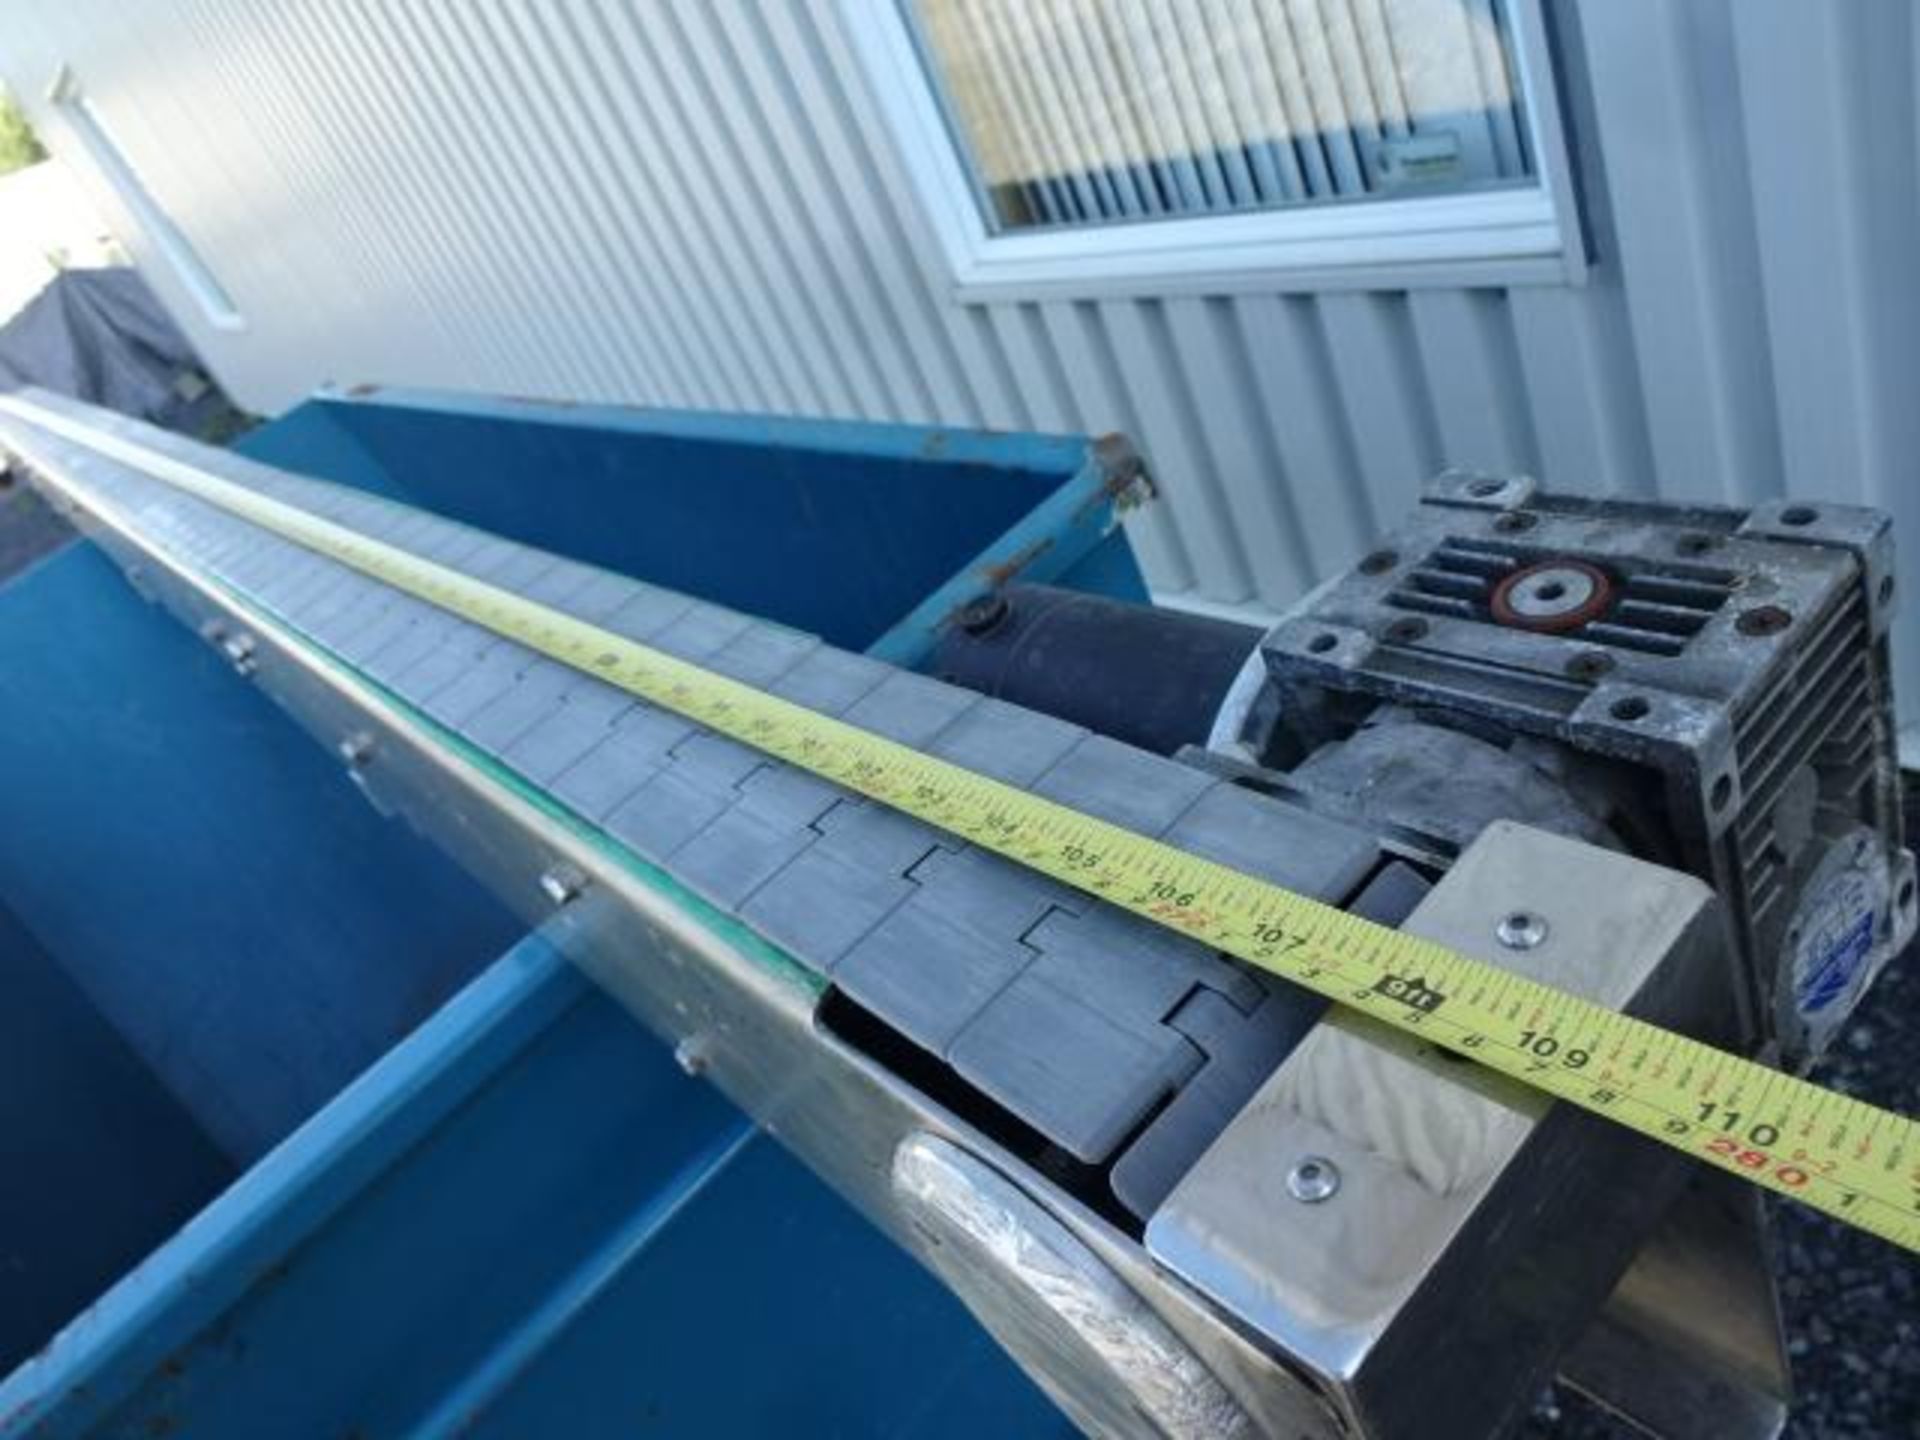 Convoyeur en inox - Stainless steel conveyor - Image 6 of 7